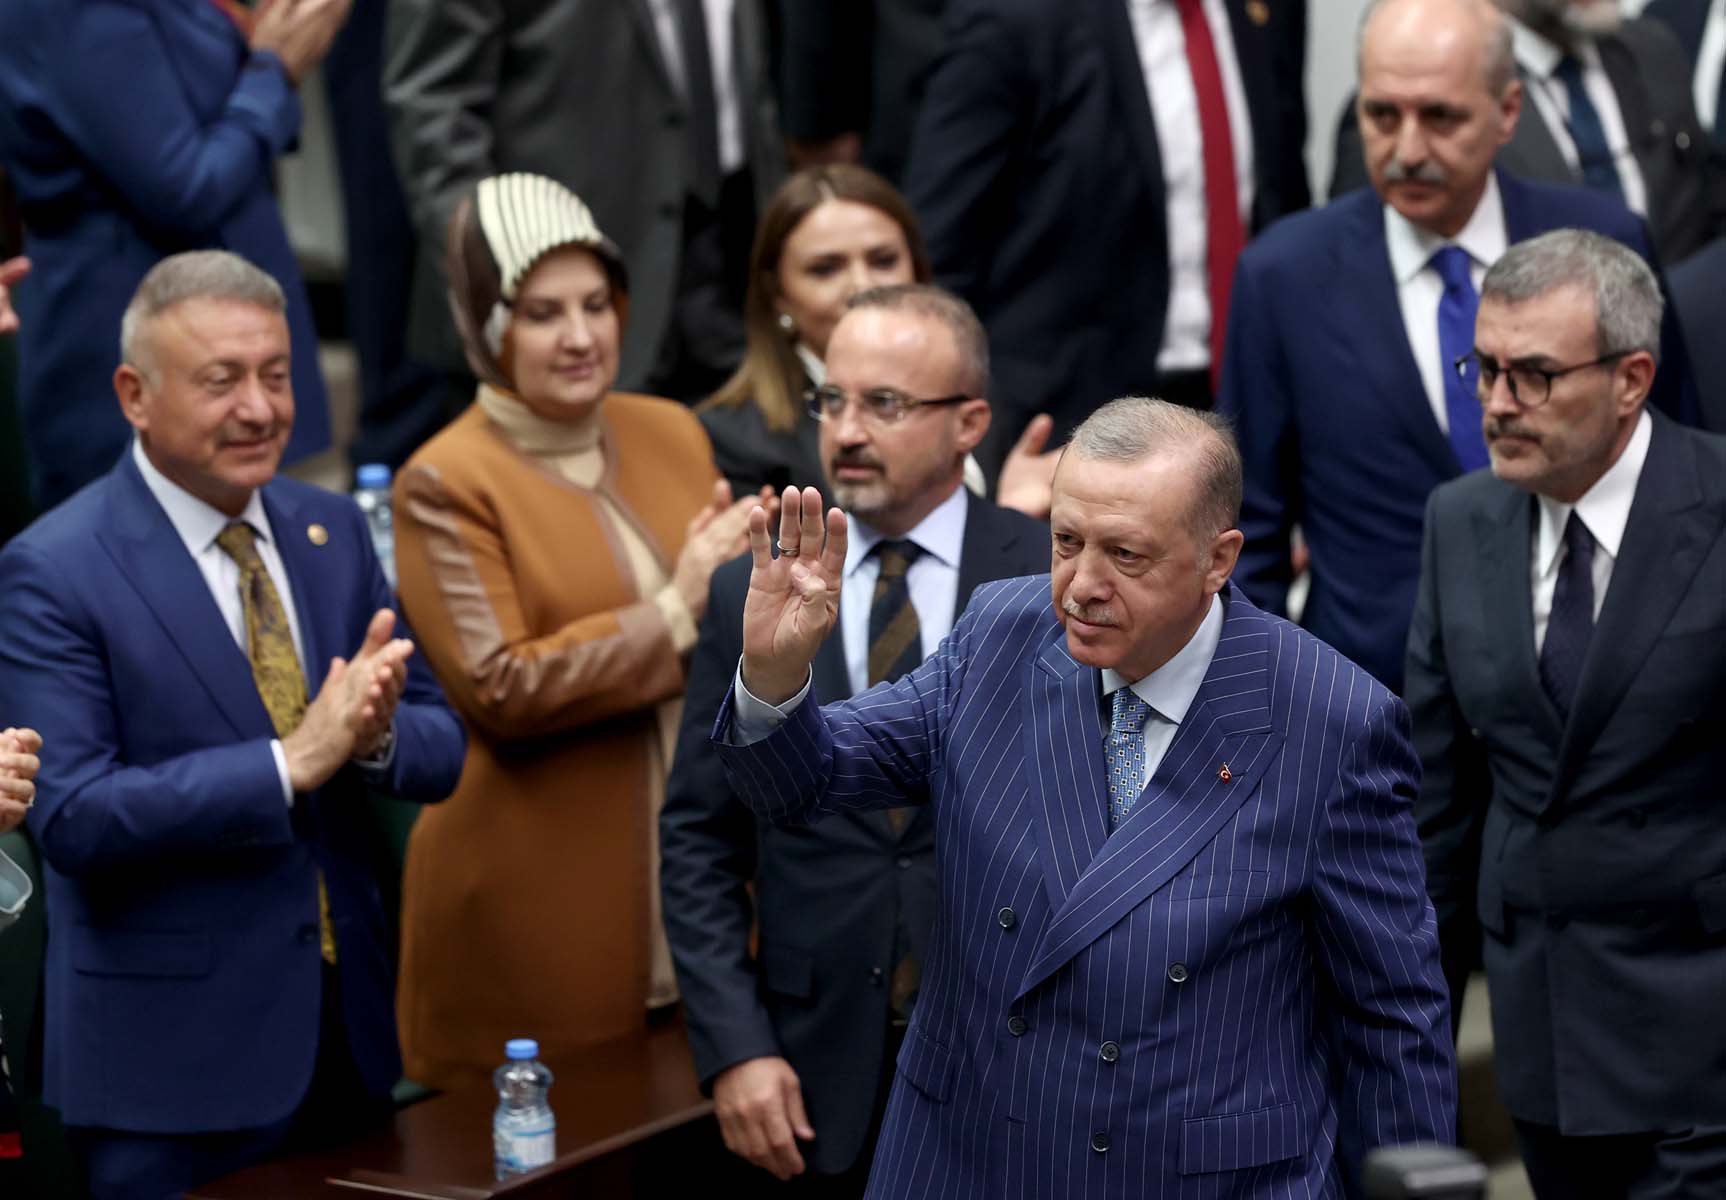 Cumhurbaşkanı Erdoğan AK Parti Grup toplantısında konuştu, Kılıçdaroğlu'na ses yükseltti: Çık ortaya mert ol, adaylığını veya adayını açıkla